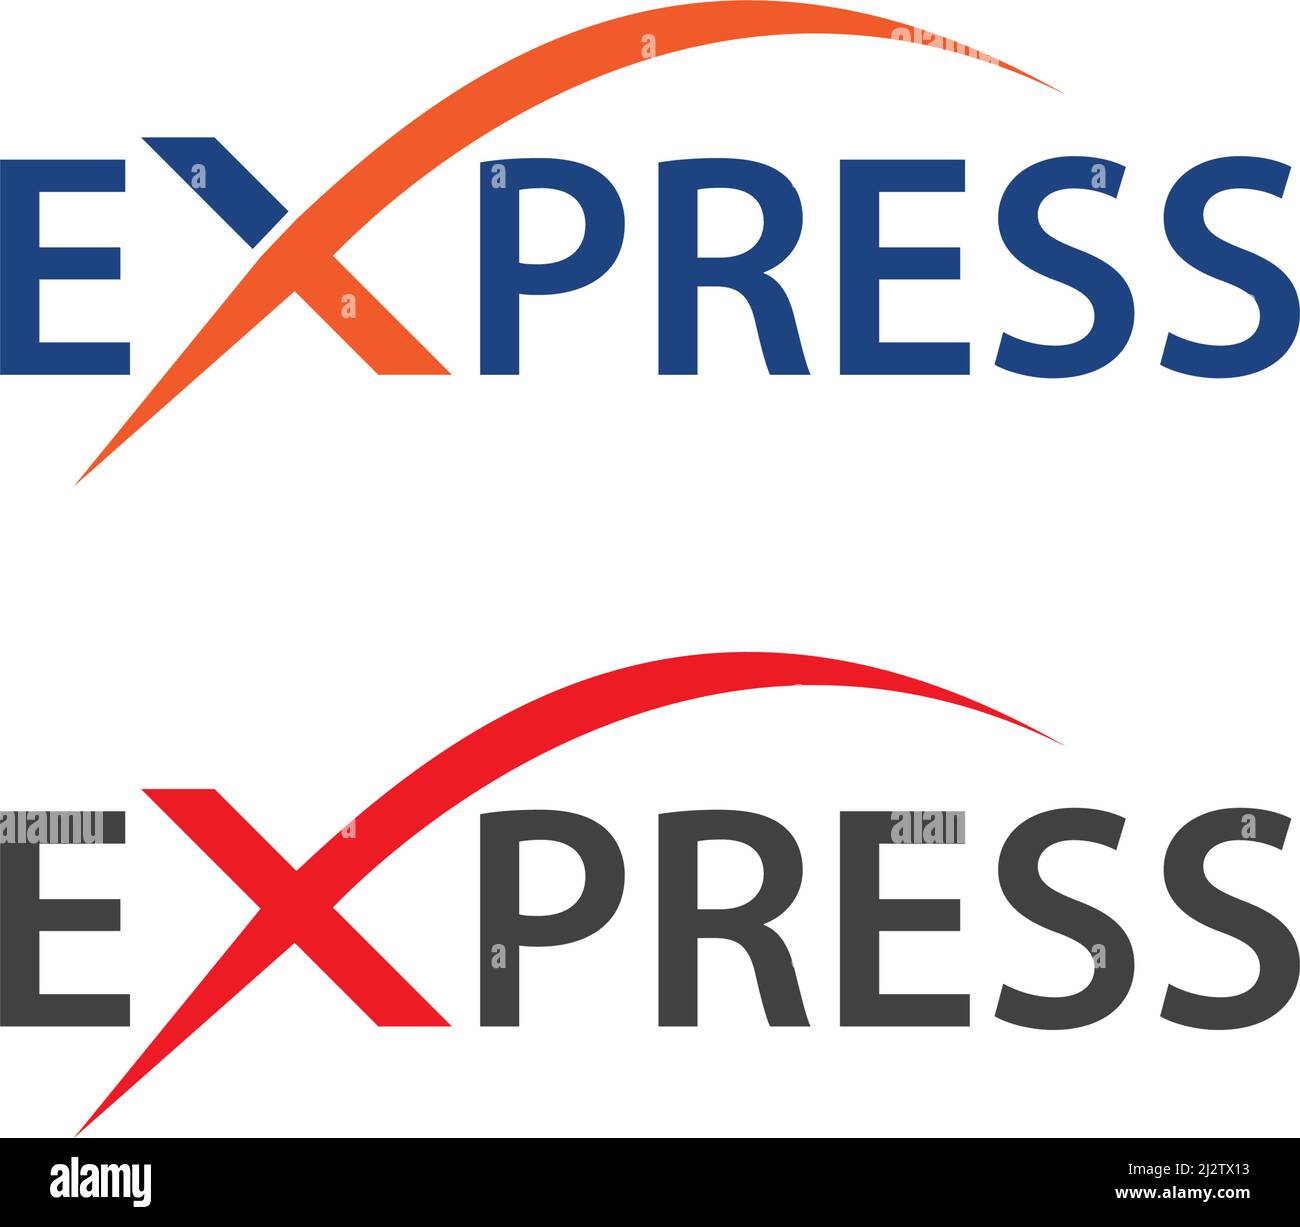 Modèle de vecteur d'illustration du logo Express Illustration de Vecteur